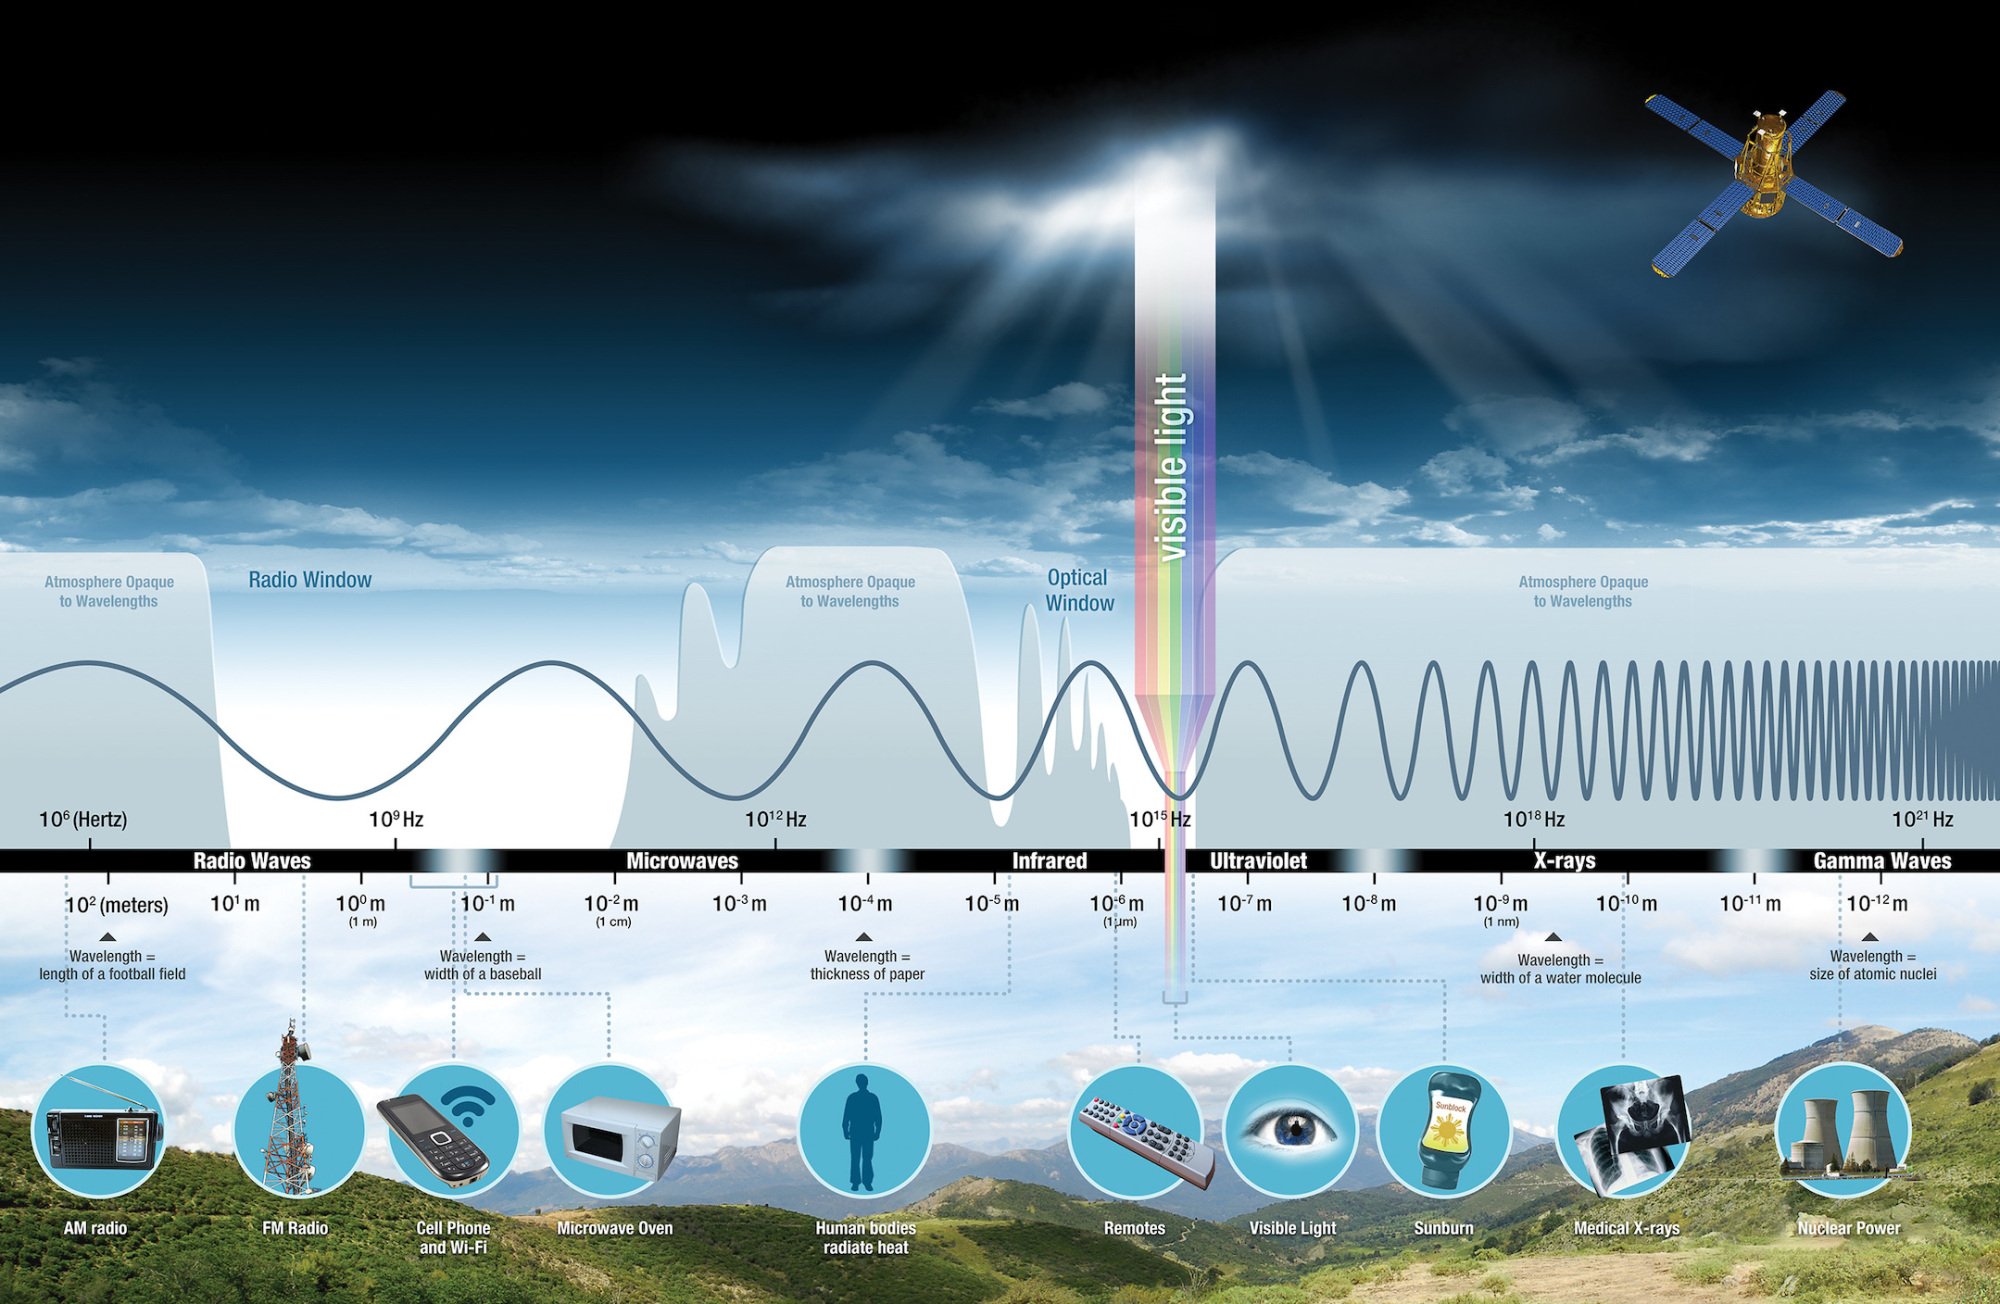 Le spectre électromagnétique montrant toutes les longueurs d'onde de la lumière, telles que la lumière visible, l'infrarouge, l'ultraviolet et au-delà.